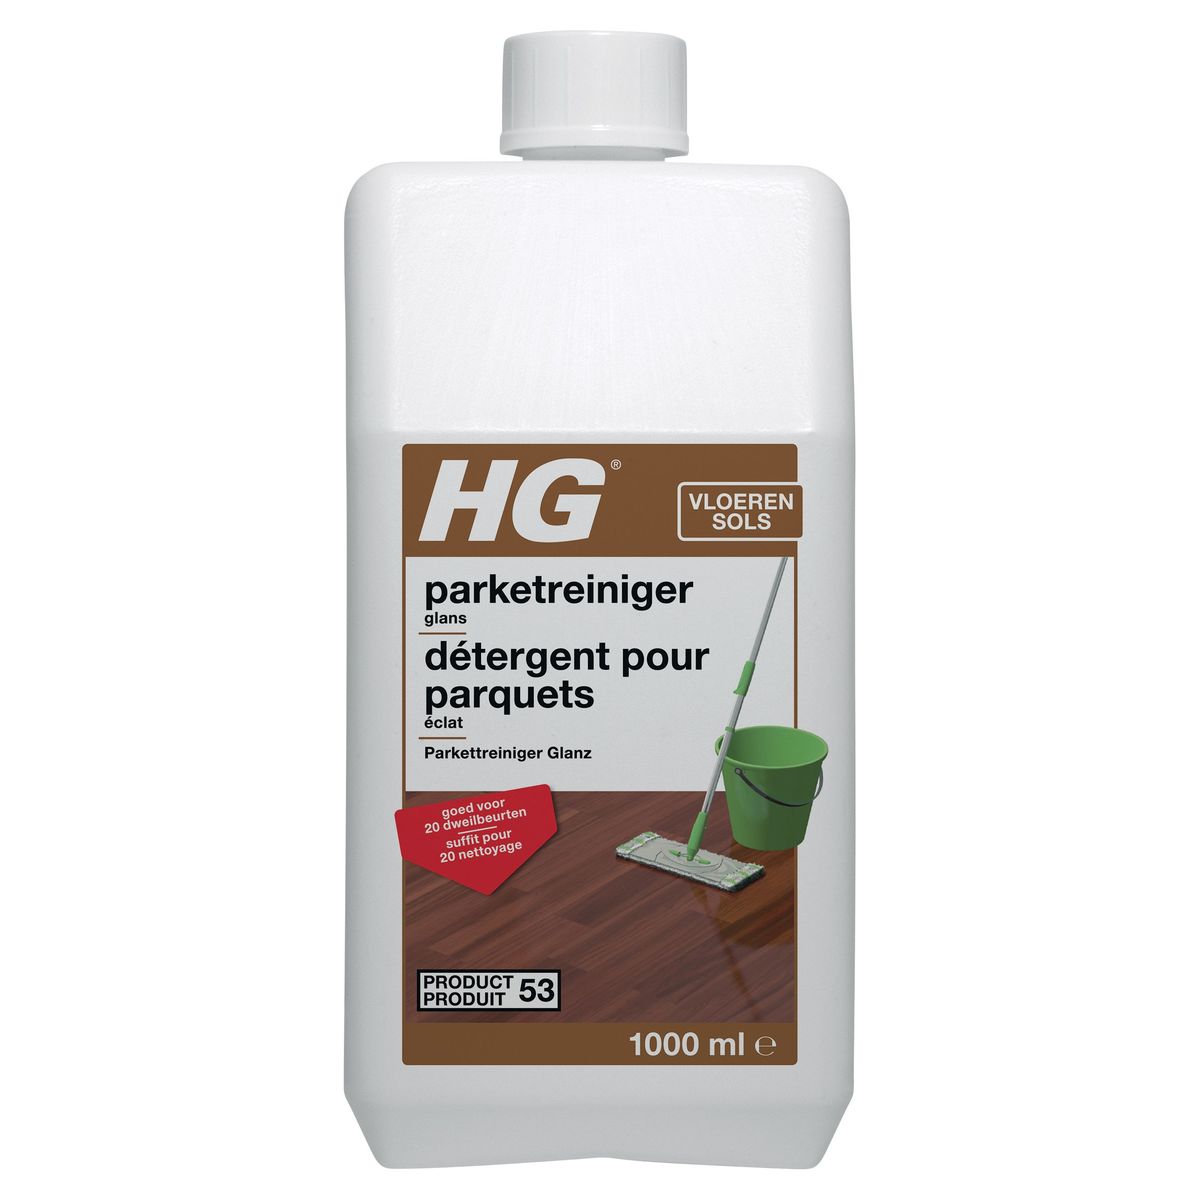 HG Parketreiniger Glans 1000 ml